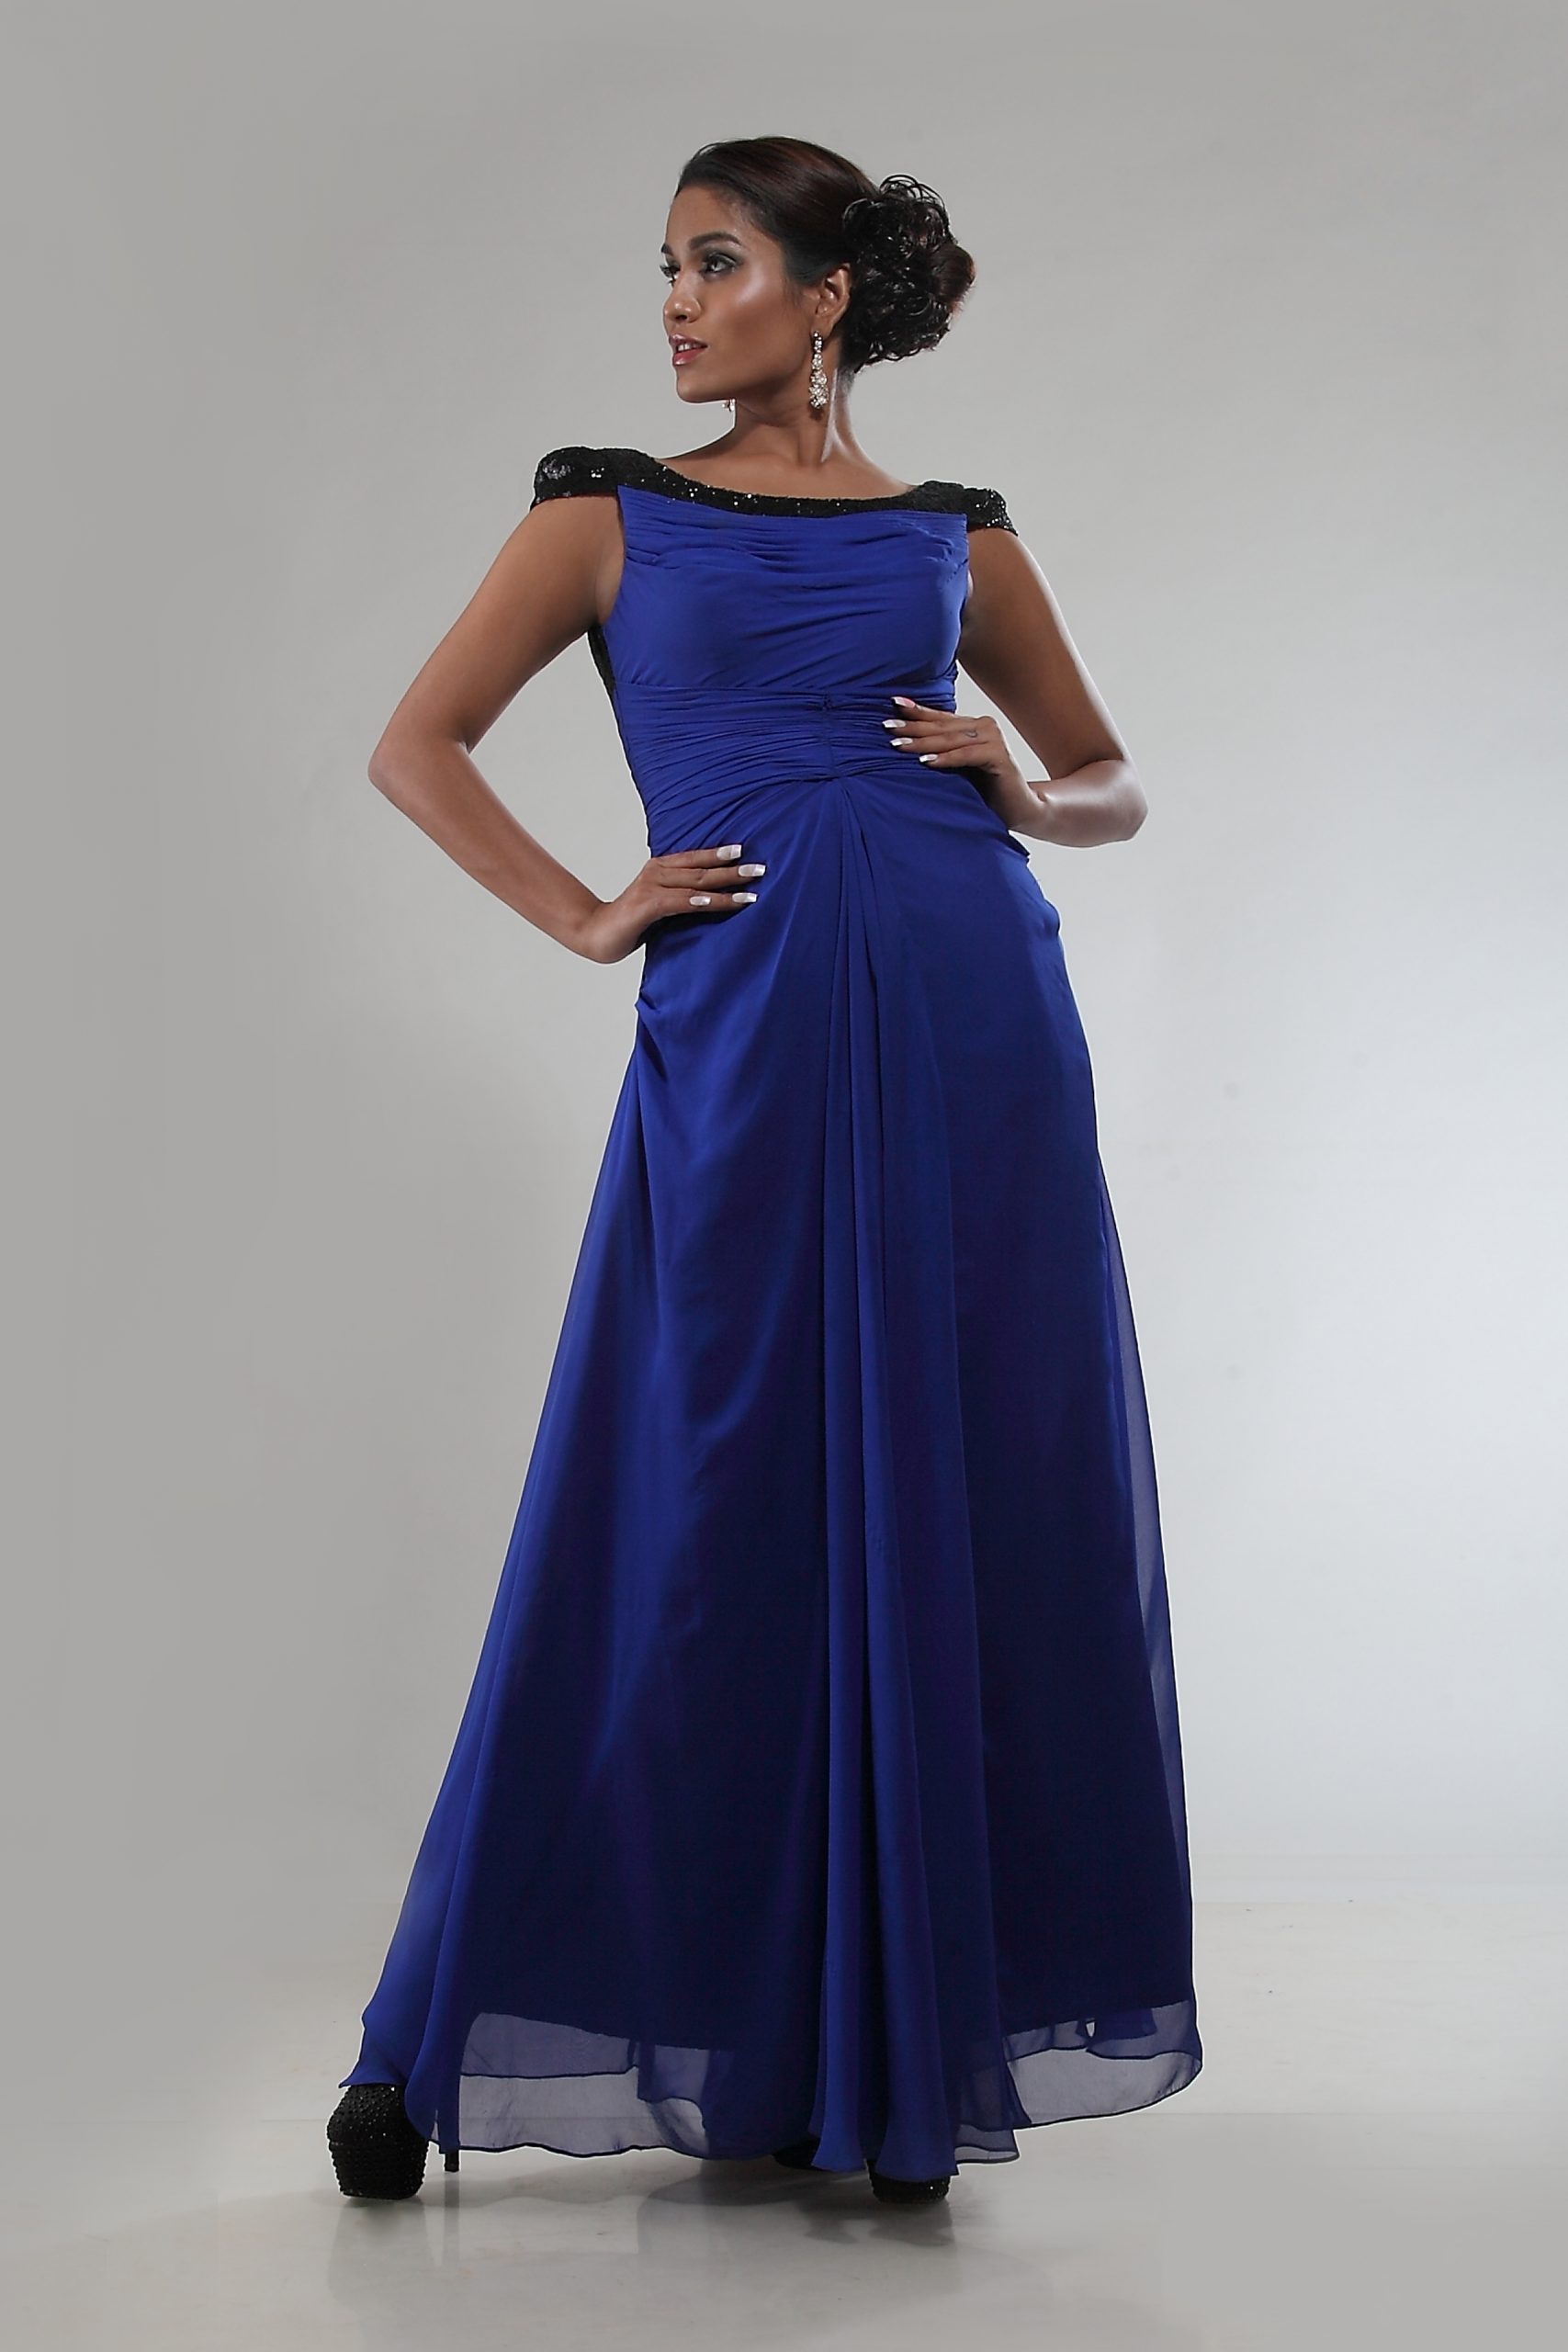 electric blue dresses | Celebrity dresses, Blue dress formal, Celebrity  wedding dresses